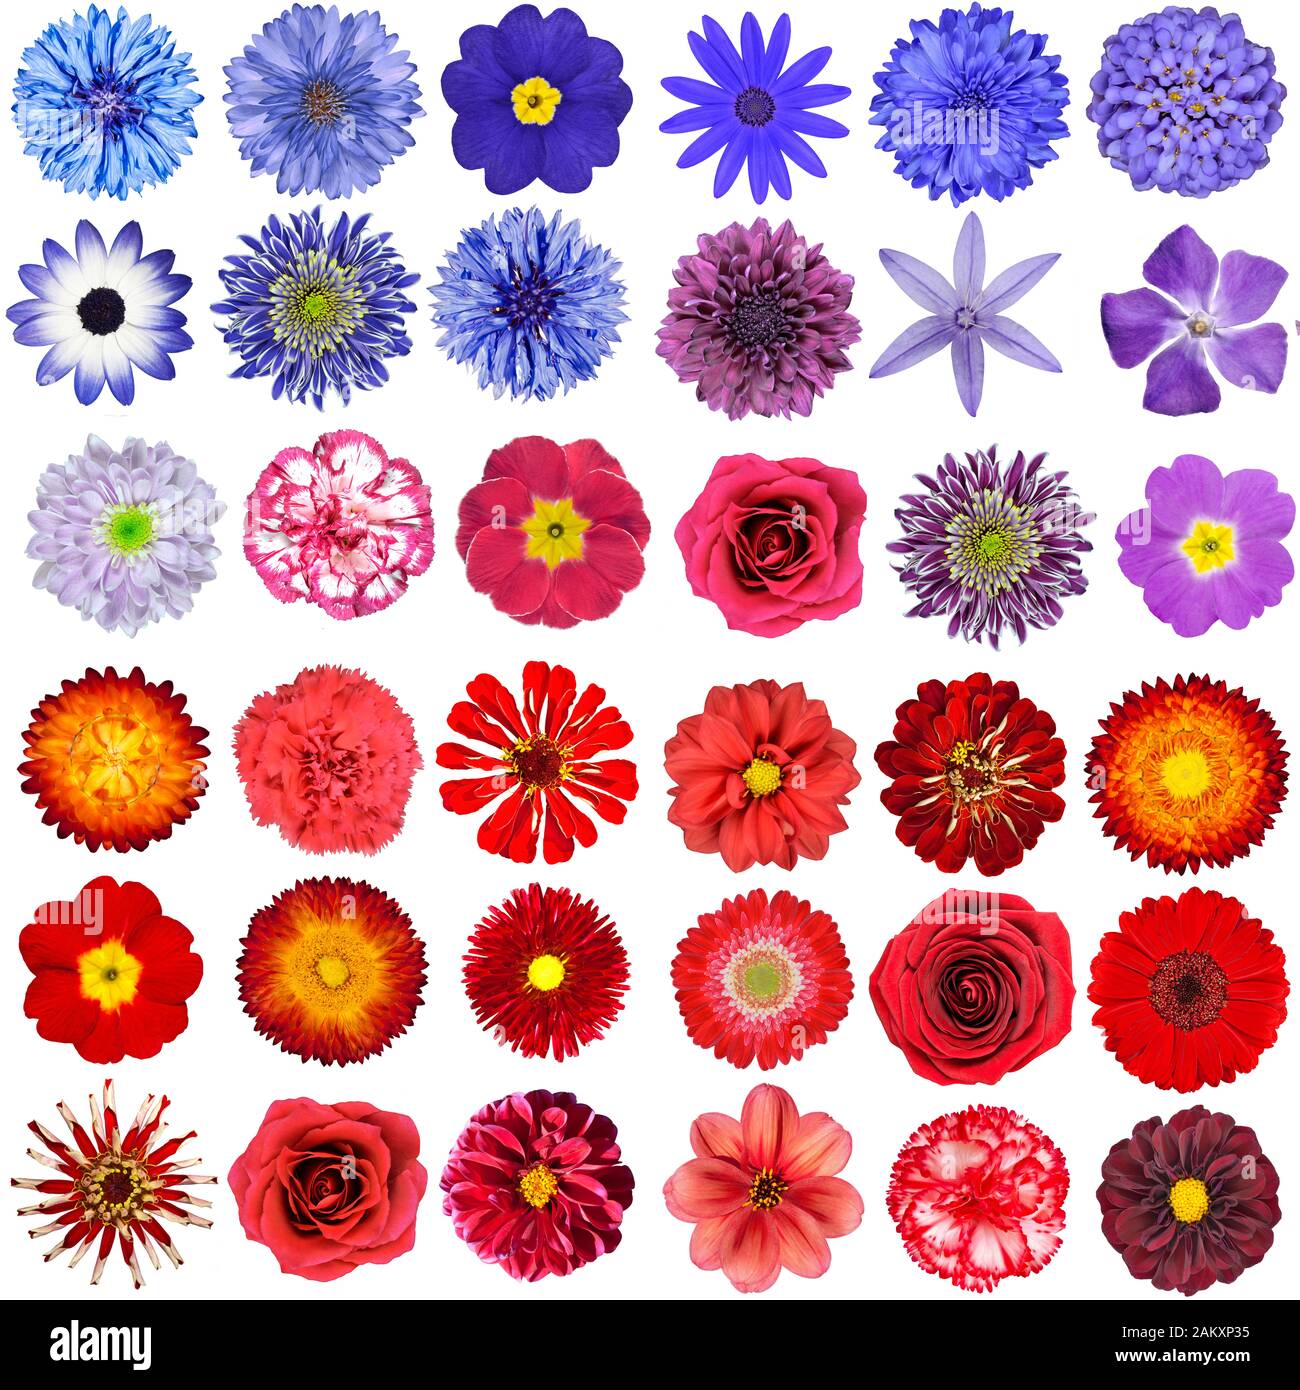 Big Collection of Red, Purple and Blue Wild Flowers Isolated on White. Verschiedene Arten Von Dahlia, Dandelion, Daisy, Gerber, Marigold Blumen Stockfoto